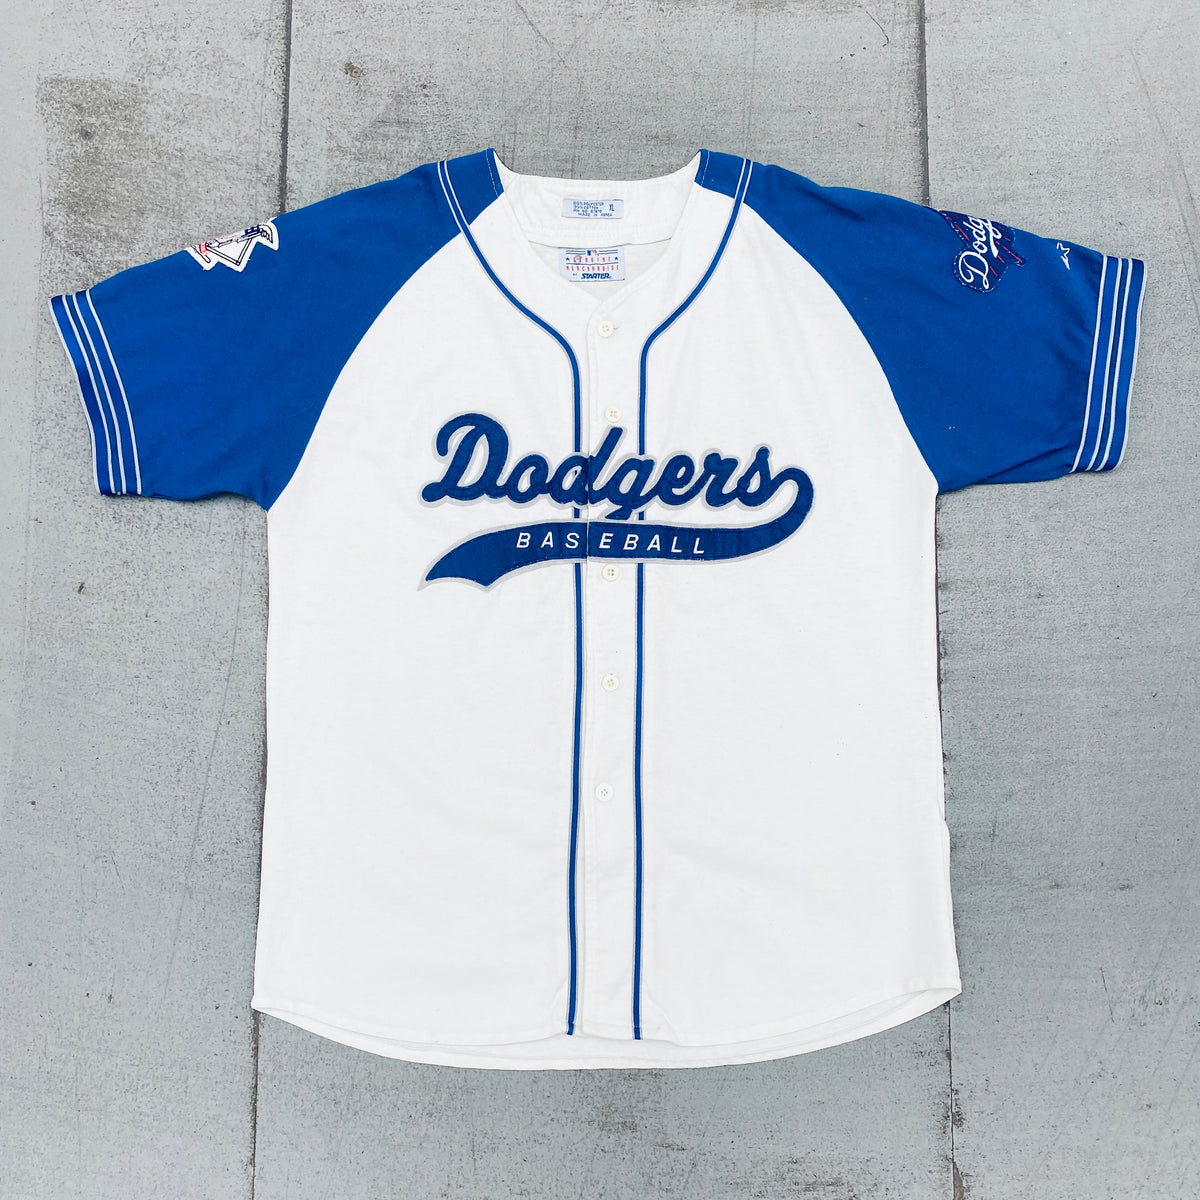 STARTER, Shirts, Vintage San Antonio Spurs Baseball Jersey Starter